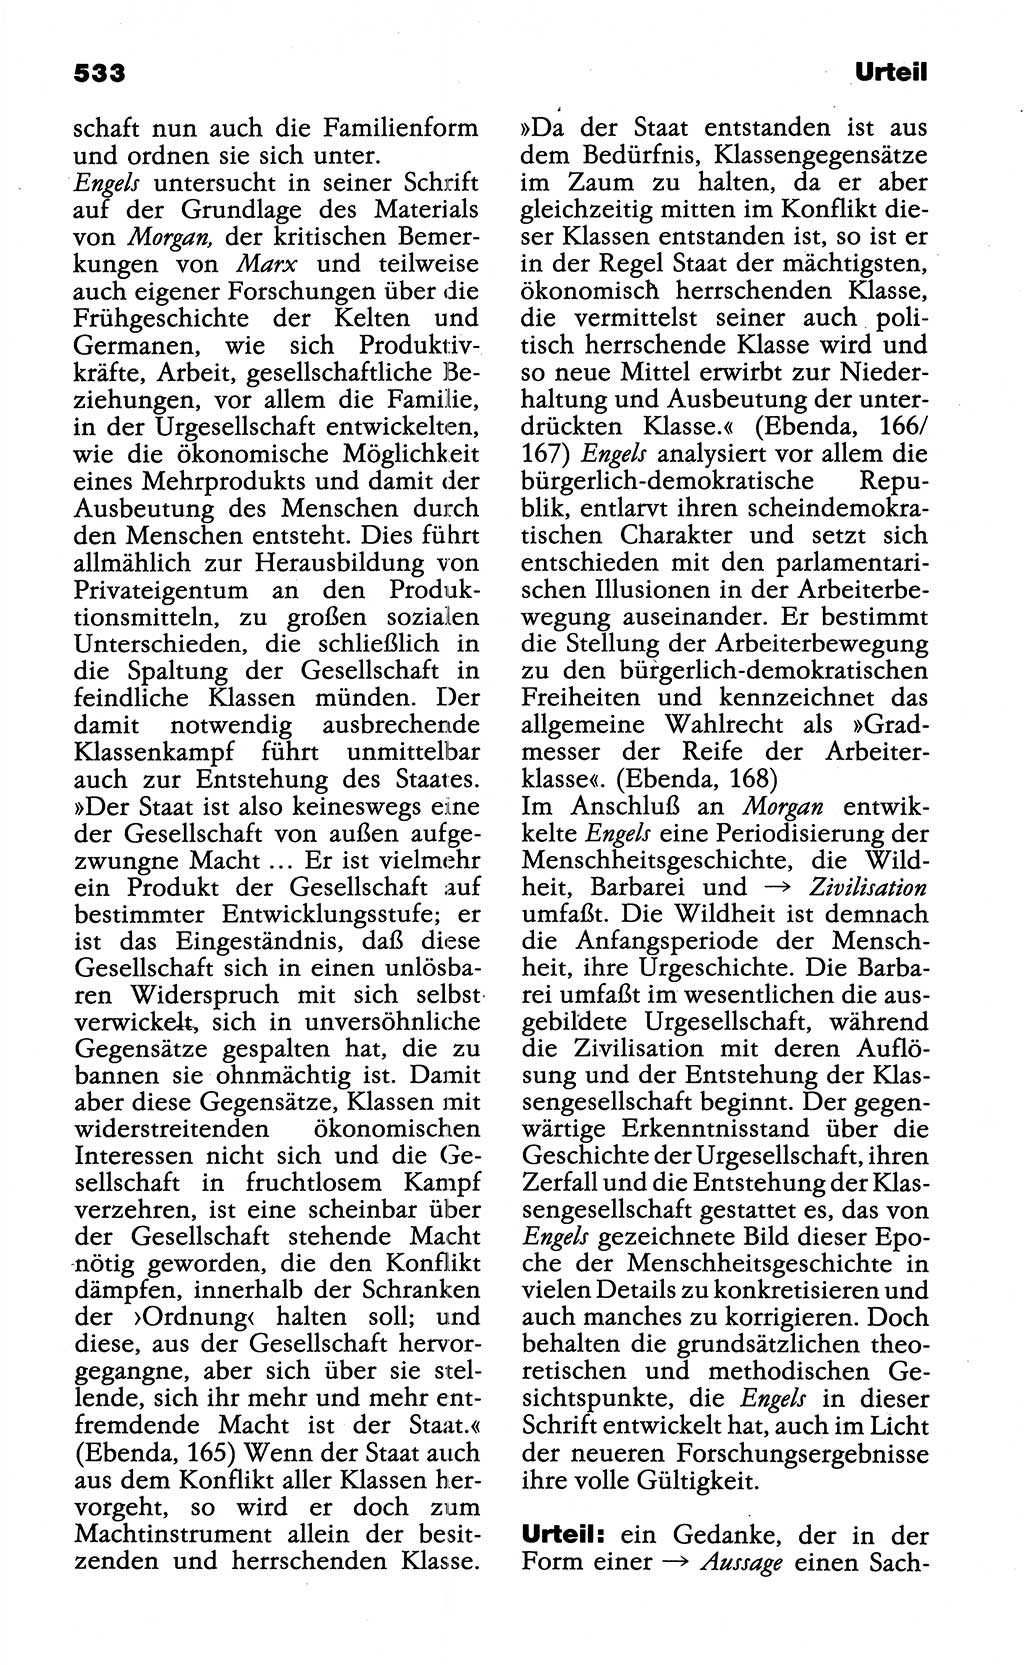 Wörterbuch der marxistisch-leninistischen Philosophie [Deutsche Demokratische Republik (DDR)] 1985, Seite 533 (Wb. ML Phil. DDR 1985, S. 533)